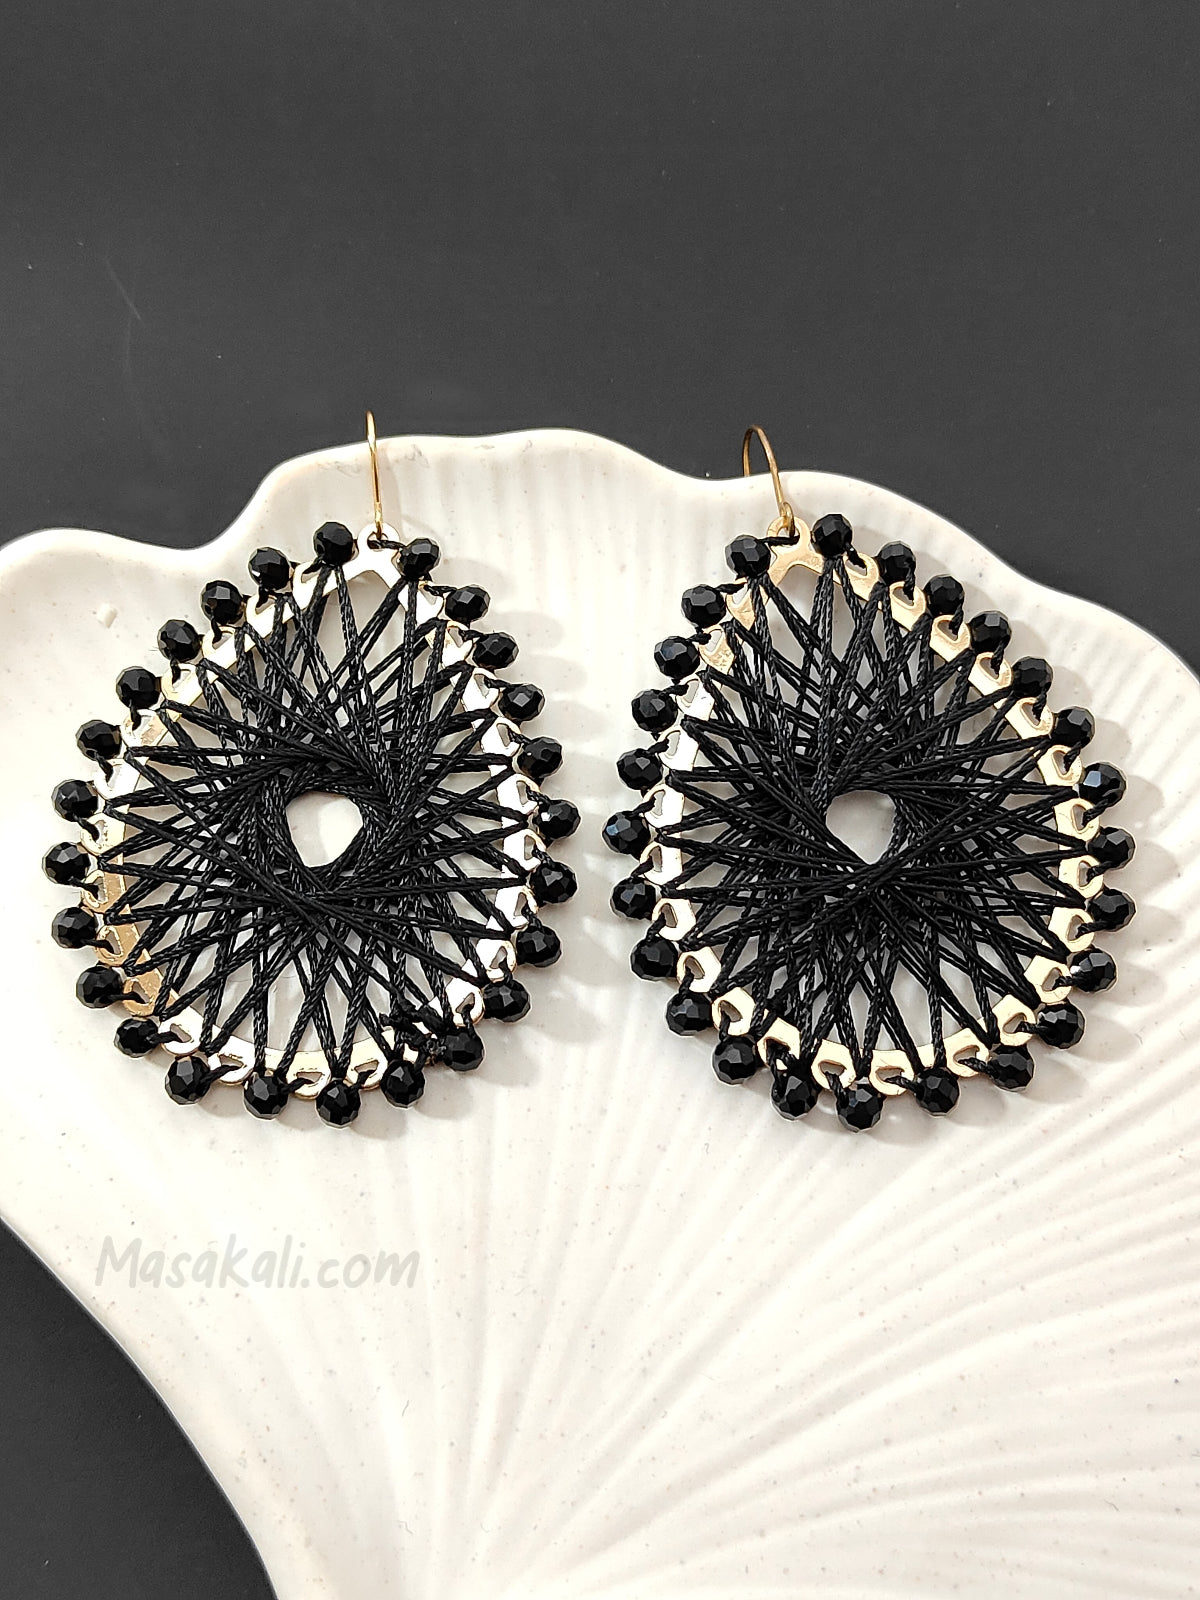 Geometric Black Crystals Twisted Knitted Earrings Crochet Teardrop Dangle Drop Threaded Earrings (MTAR1028)